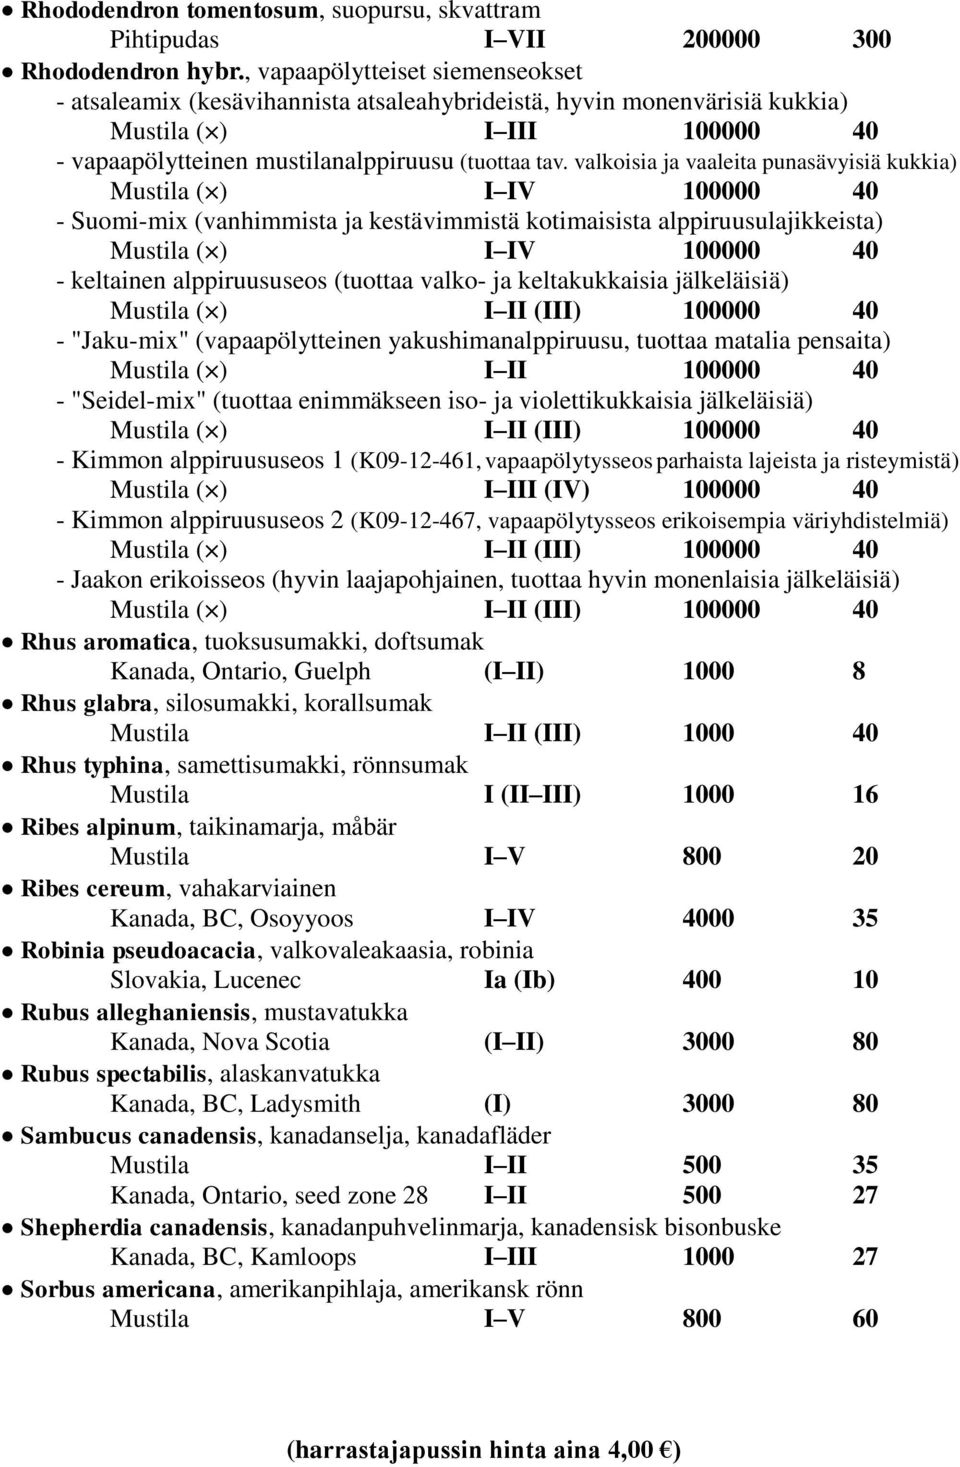 valkoisia ja vaaleita punasävyisiä kukkia) ( ) I IV 100000 40 - Suomi-mix (vanhimmista ja kestävimmistä kotimaisista alppiruusulajikkeista) ( ) I IV 100000 40 - keltainen alppiruususeos (tuottaa